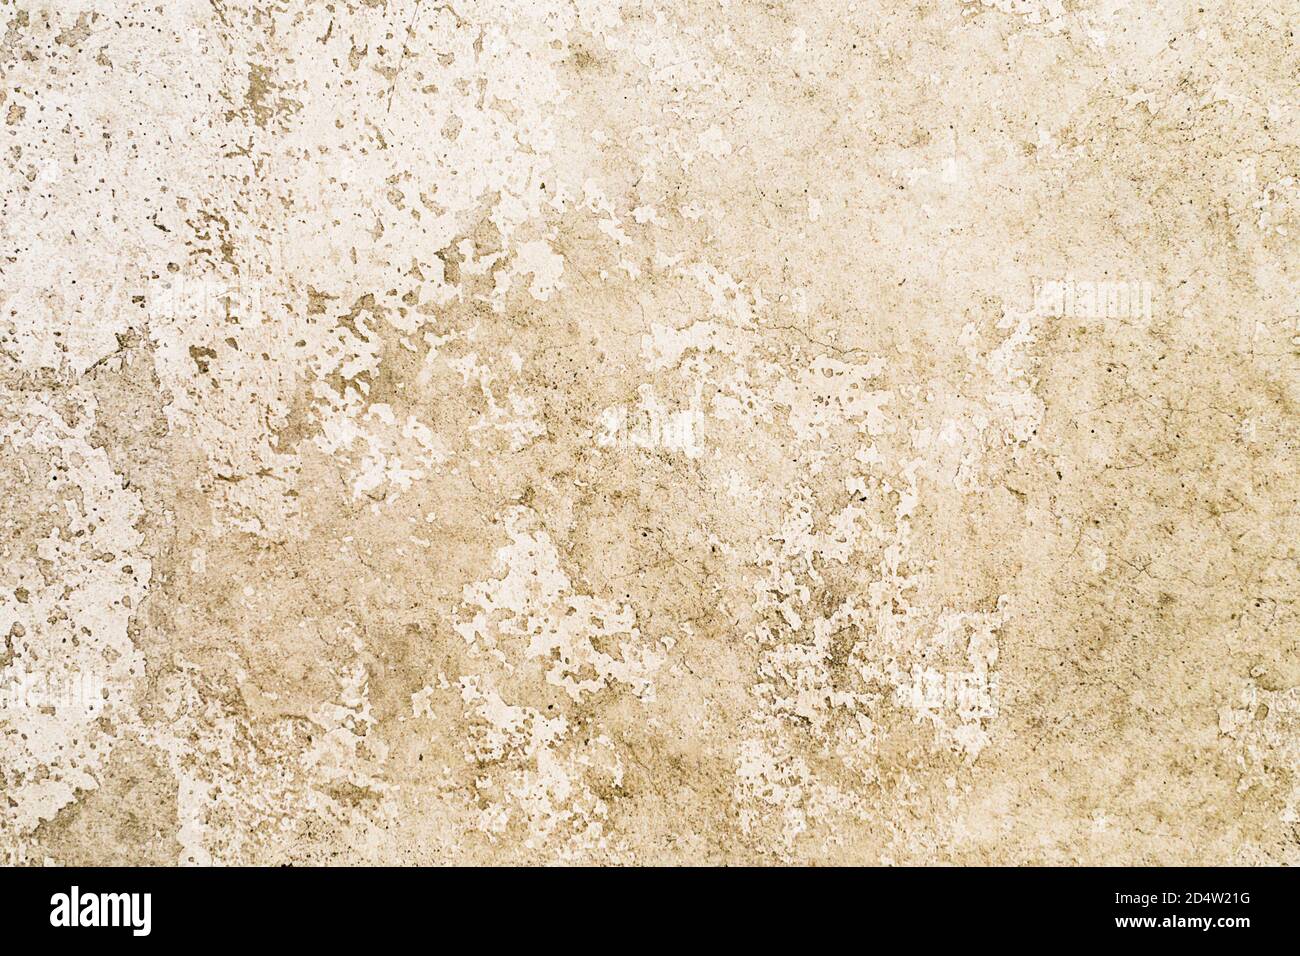 Marmor Grunge Zement Wand Textur Hintergrund. Notleidende Overlay-Textur der verrosteten geschälten Wand. Abstraktes Texturmuster Stockfoto